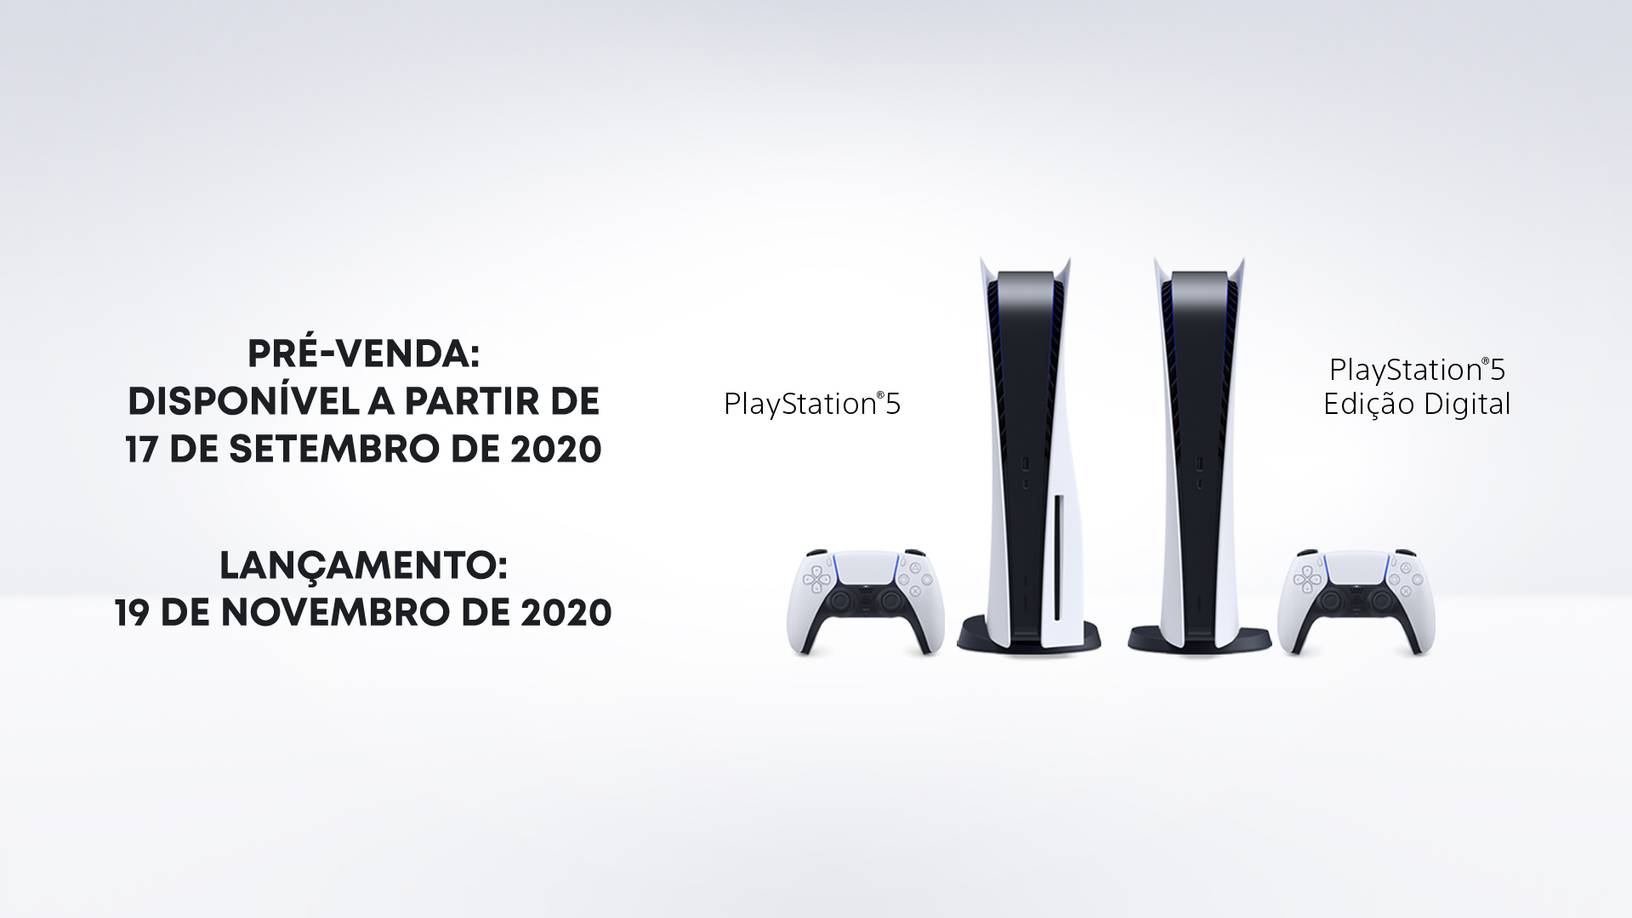 PS5 chega no Brasil a R$ 4499 na edição digital e a R$ 4999 com leitor